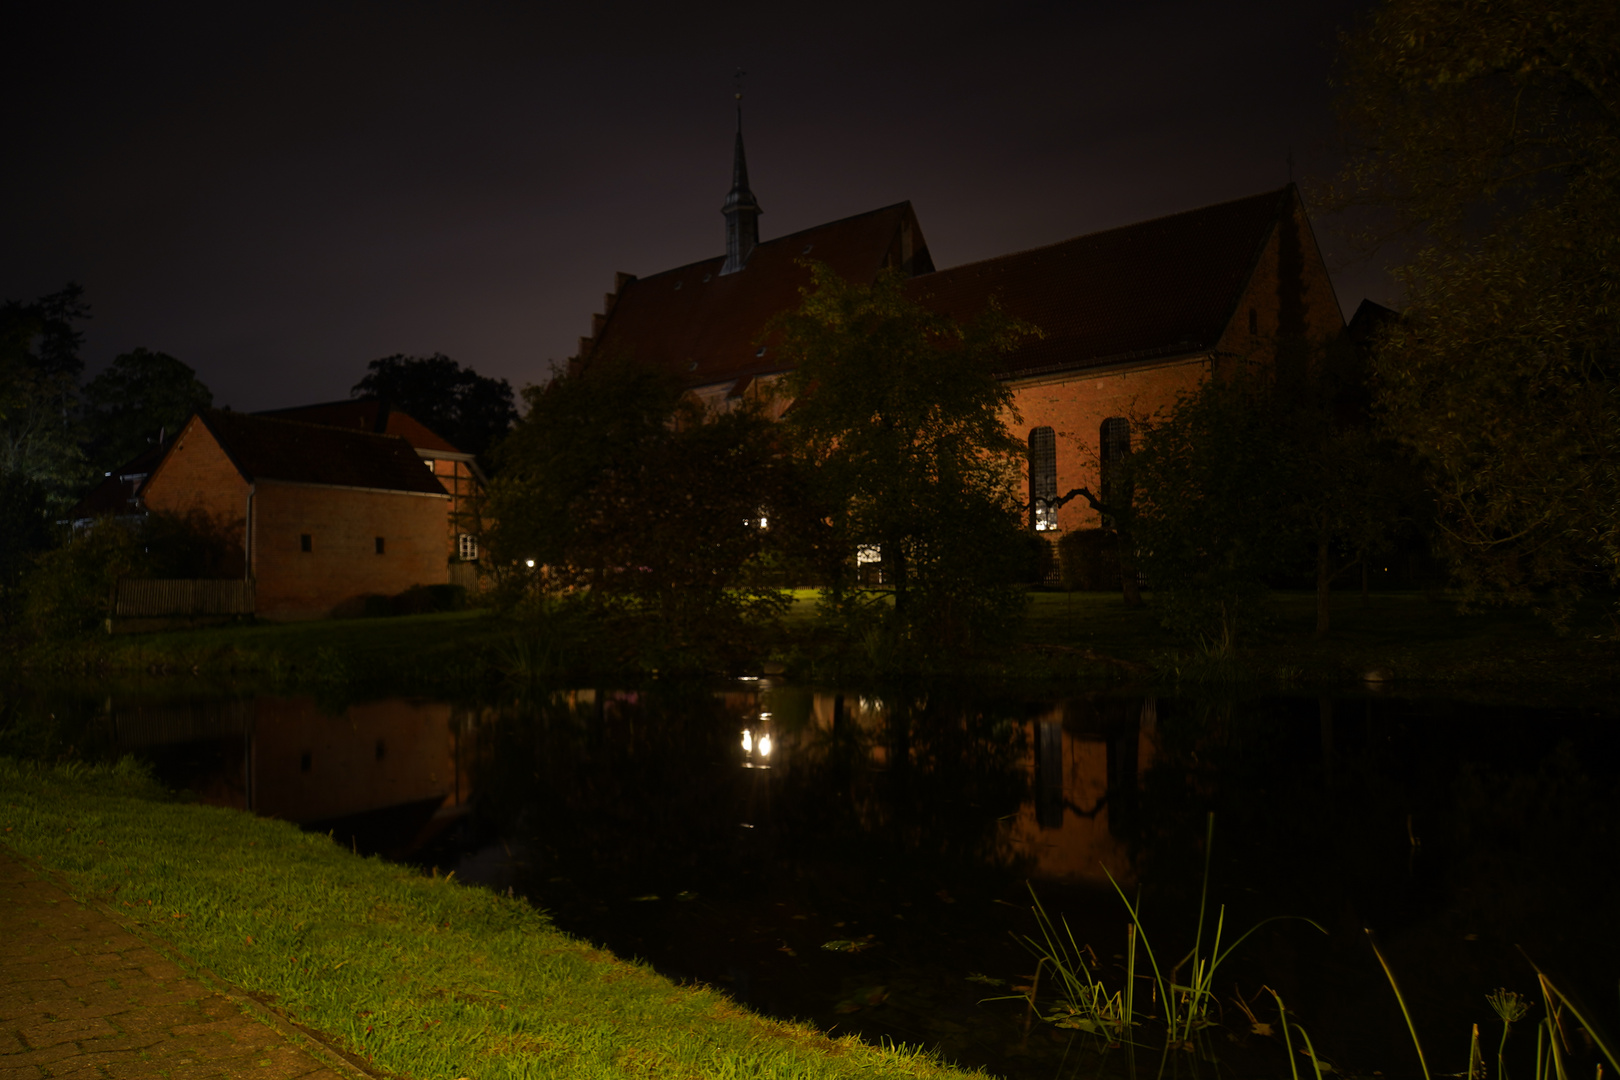 Wienhausen bei Nacht